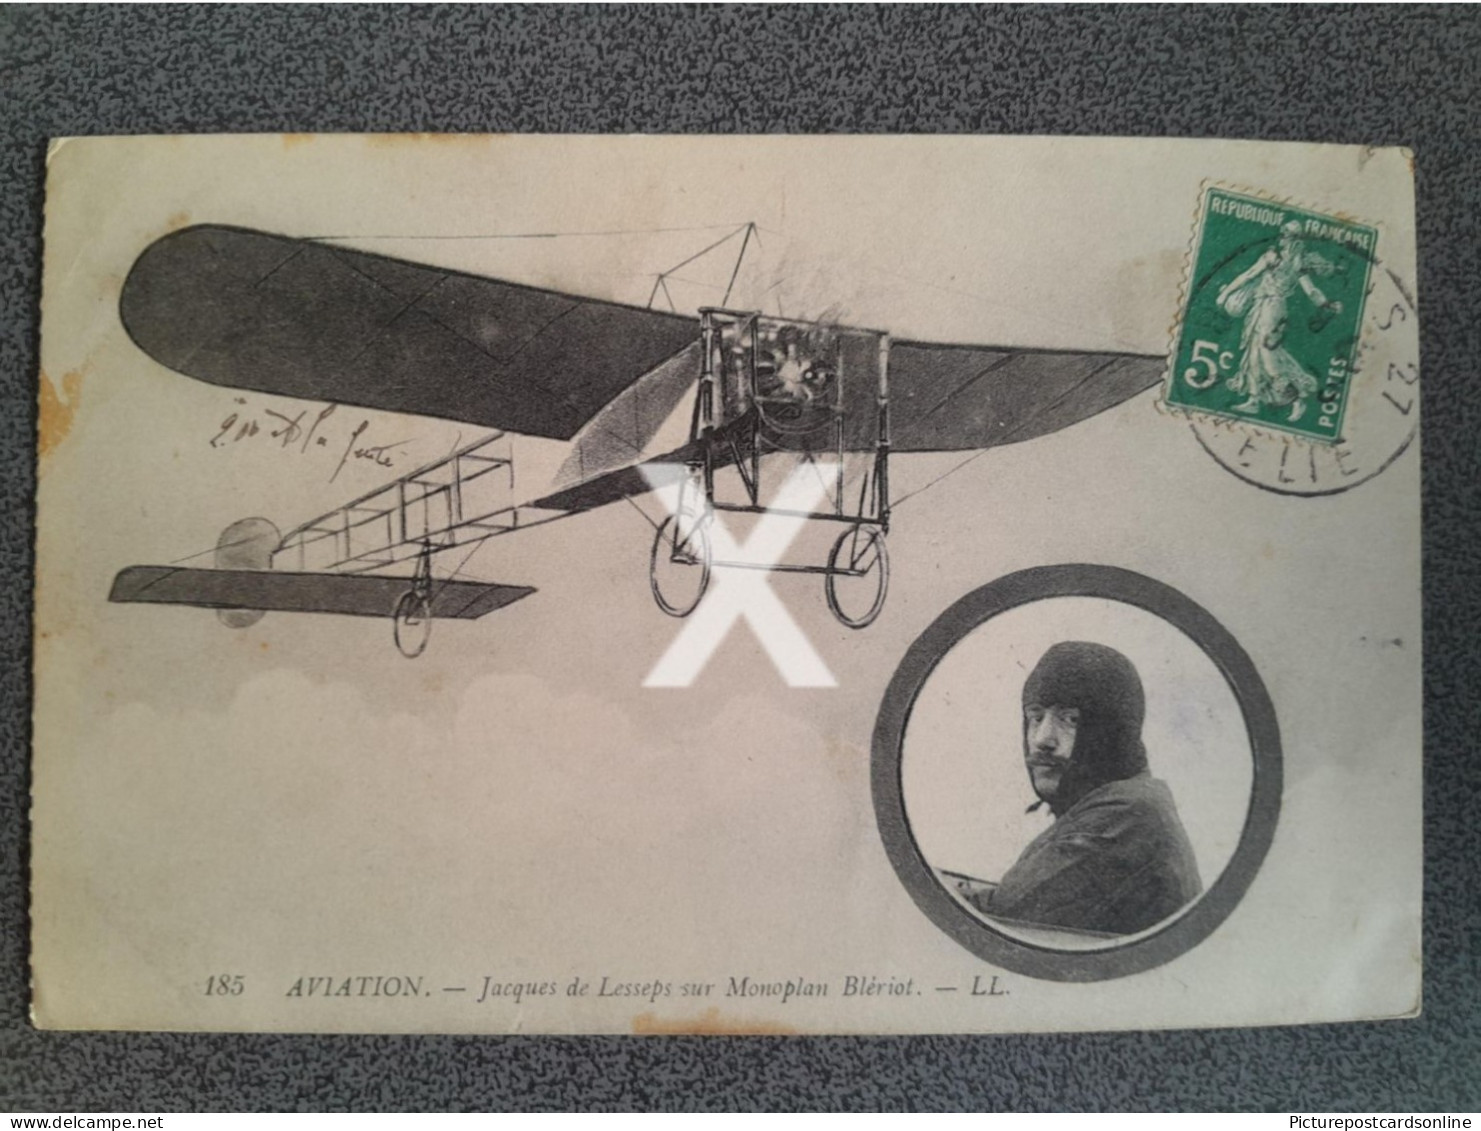 AVIATION JACQUES DE LESSEPS SUR MONOPLAN BLERIOT OLD B/W POSTCARD MONOPLANE FRANCE PILOT - ....-1914: Precursores